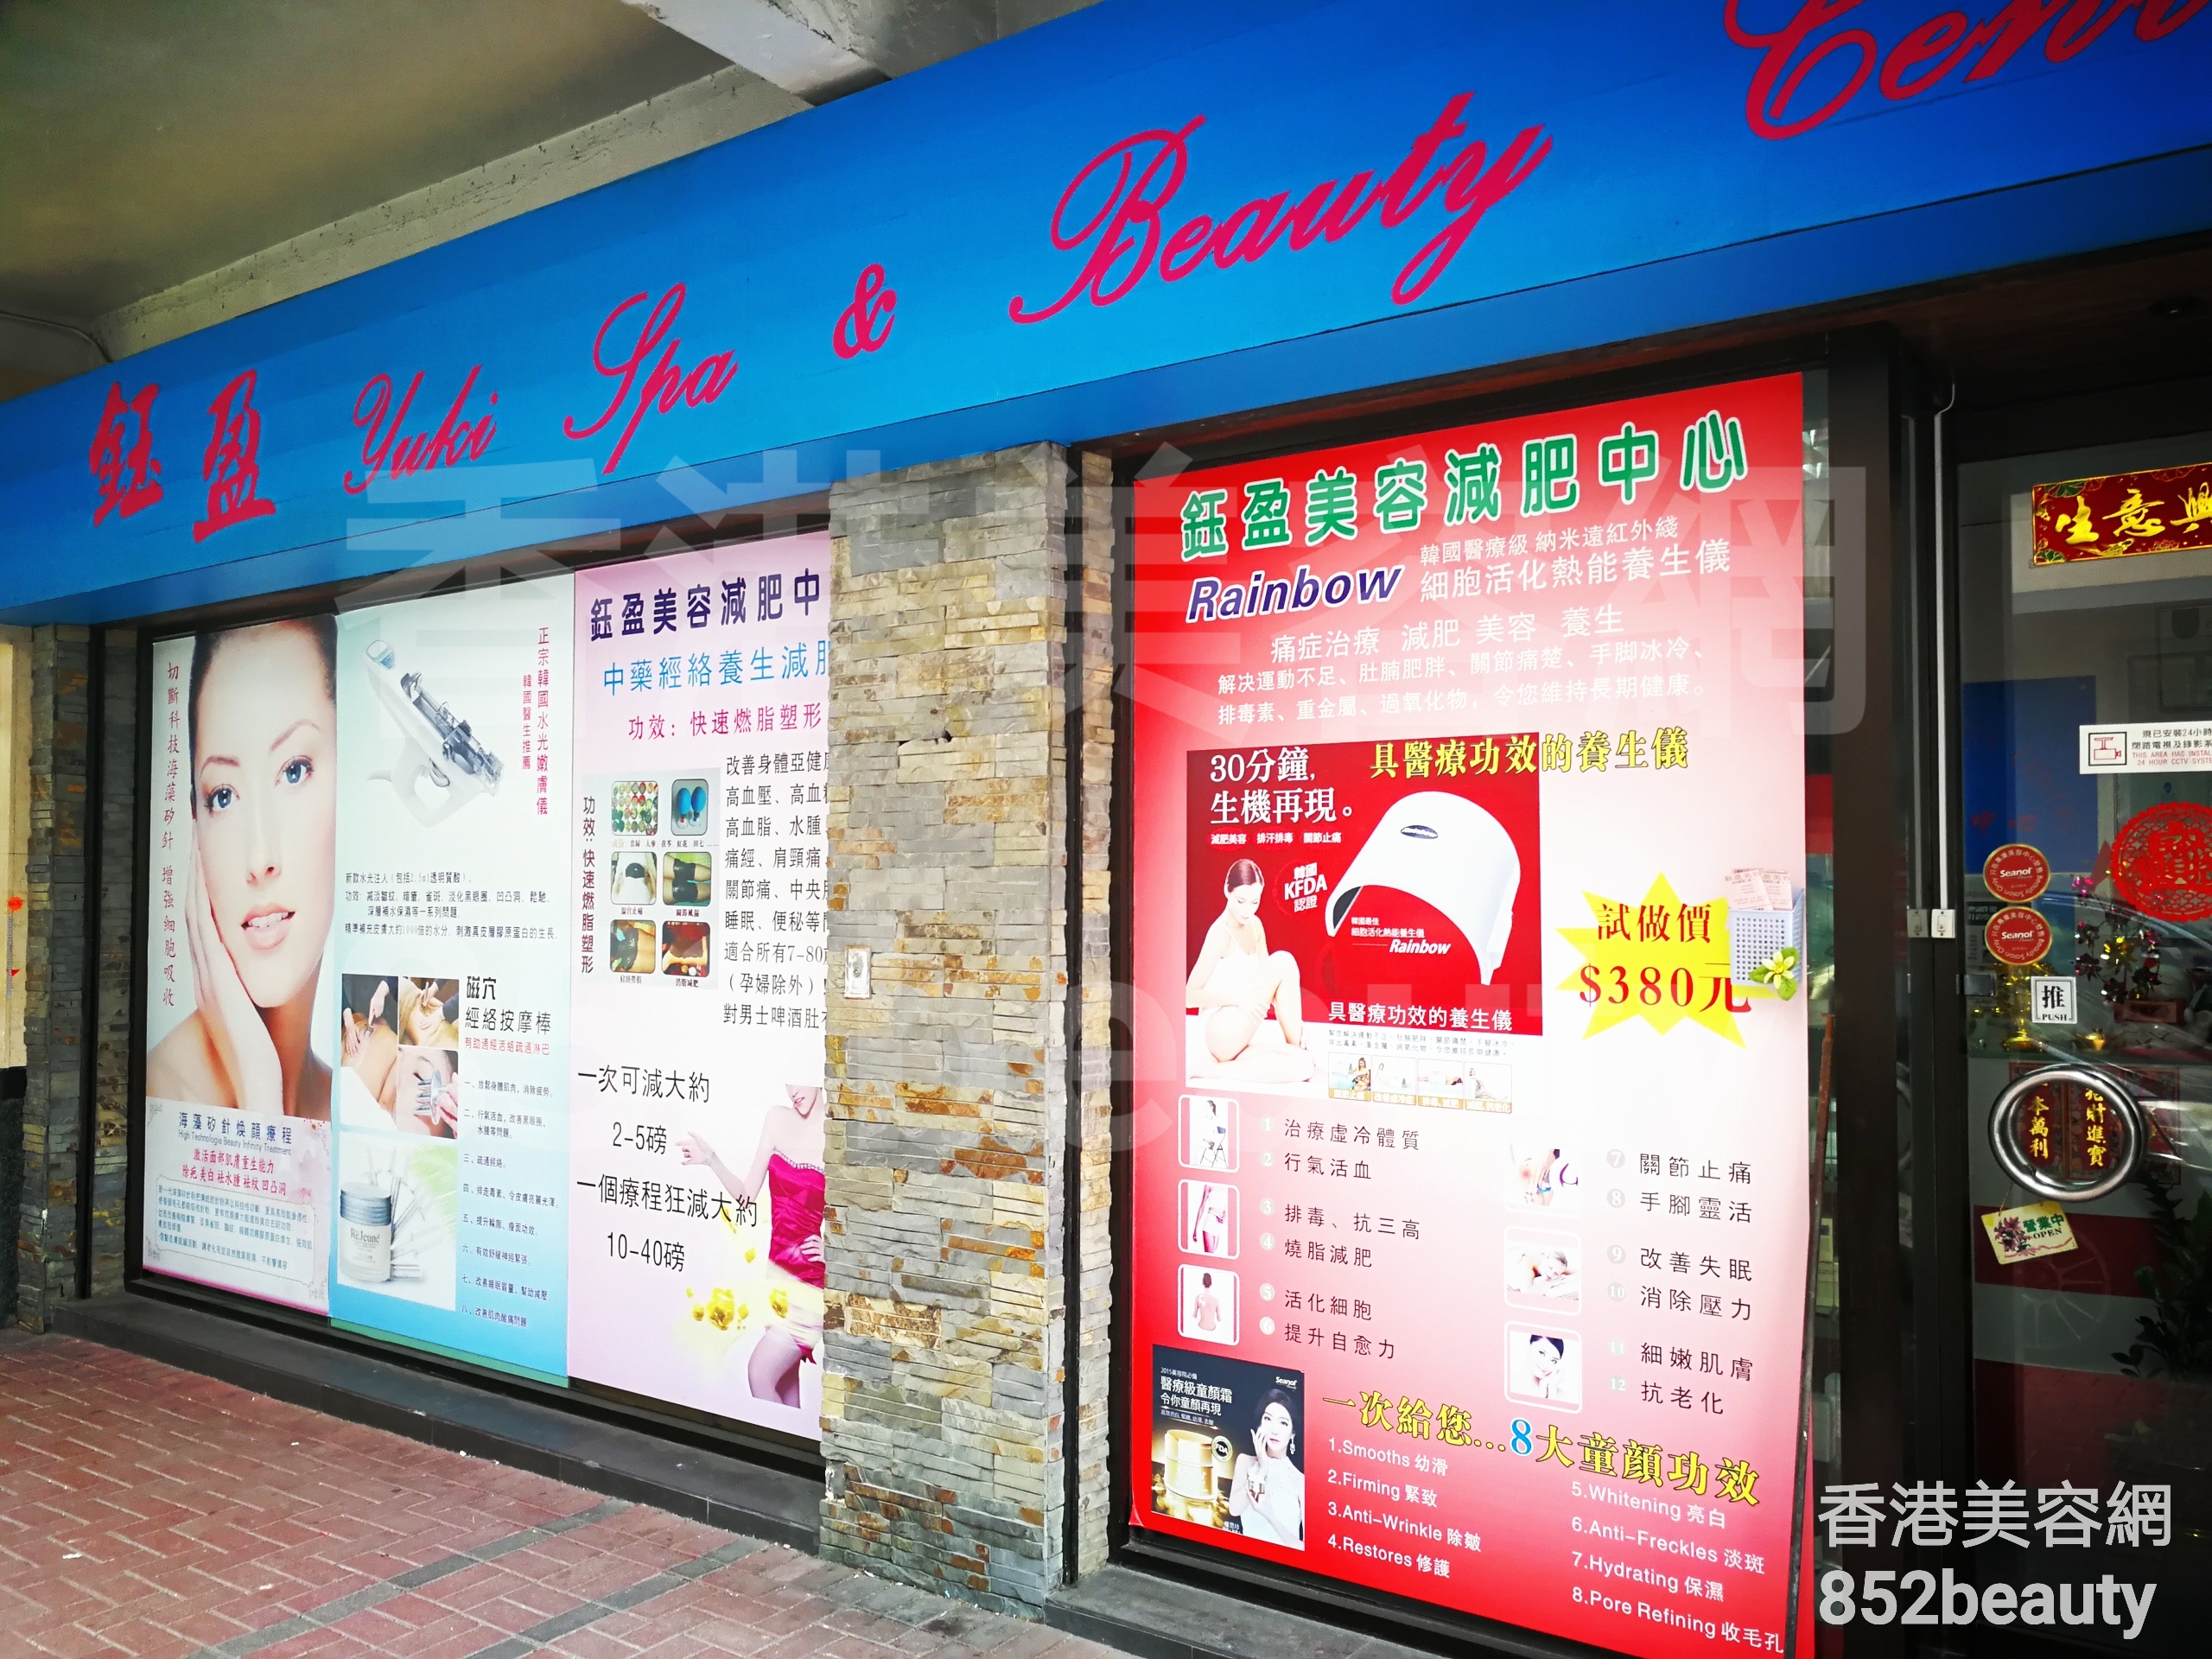 香港美容網 Hong Kong Beauty Salon 美容院 / 美容師: 鈺盈 Yuki Spa & Beauty Centre